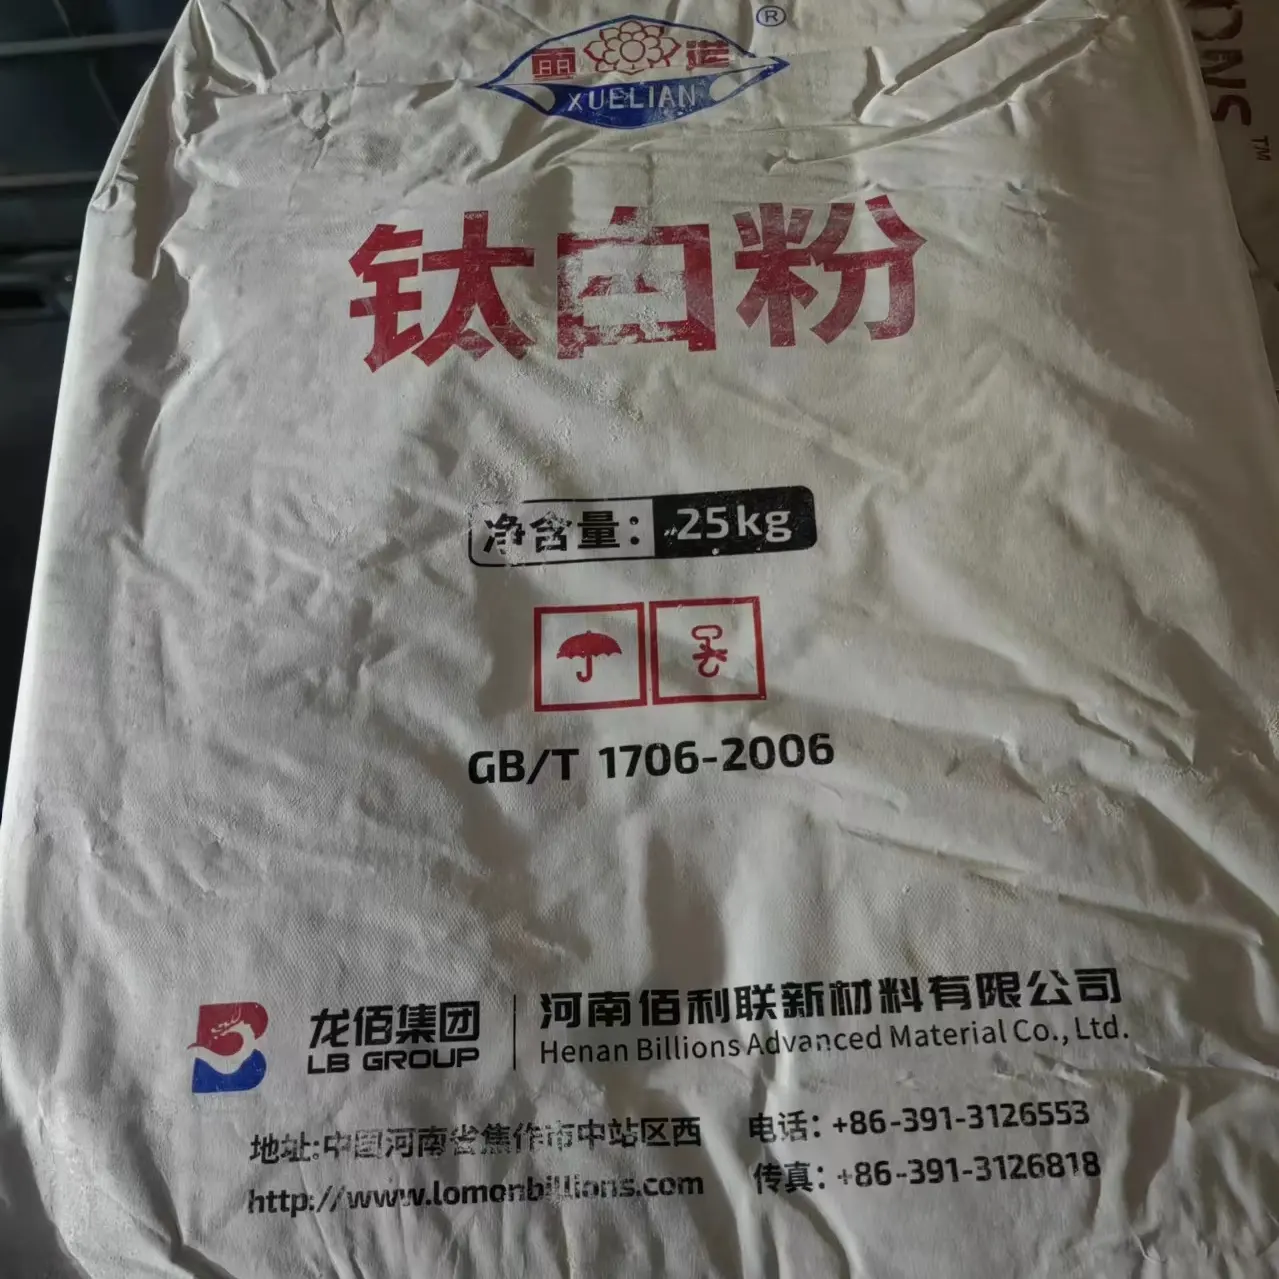 Lomon Titanium Dioxide TiO2 rutile 996 Titanium Dioxide sắc tố Sản xuất tại Trung Quốc Titanium Dioxide 895